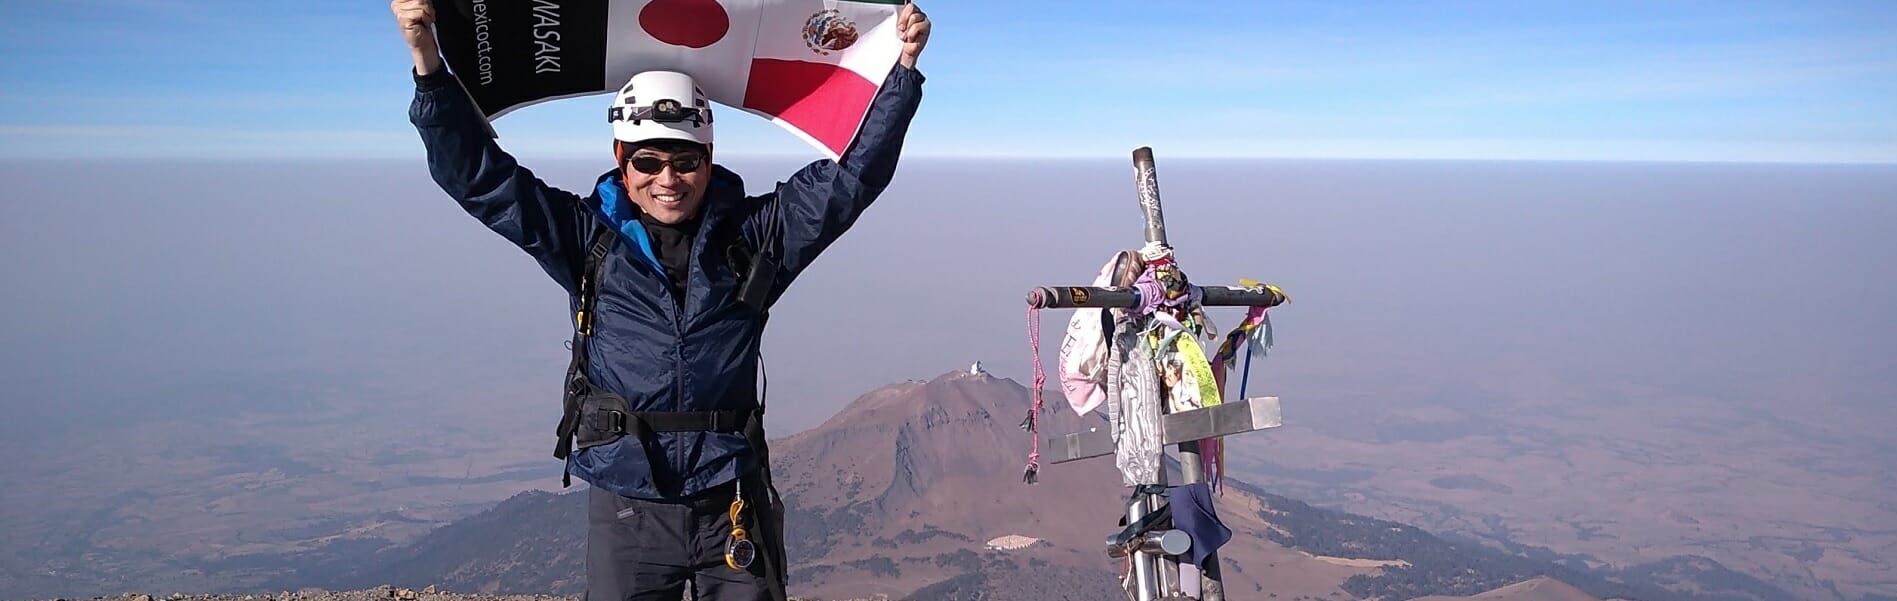 山頂でメキシコと日本の国旗を掲げている人